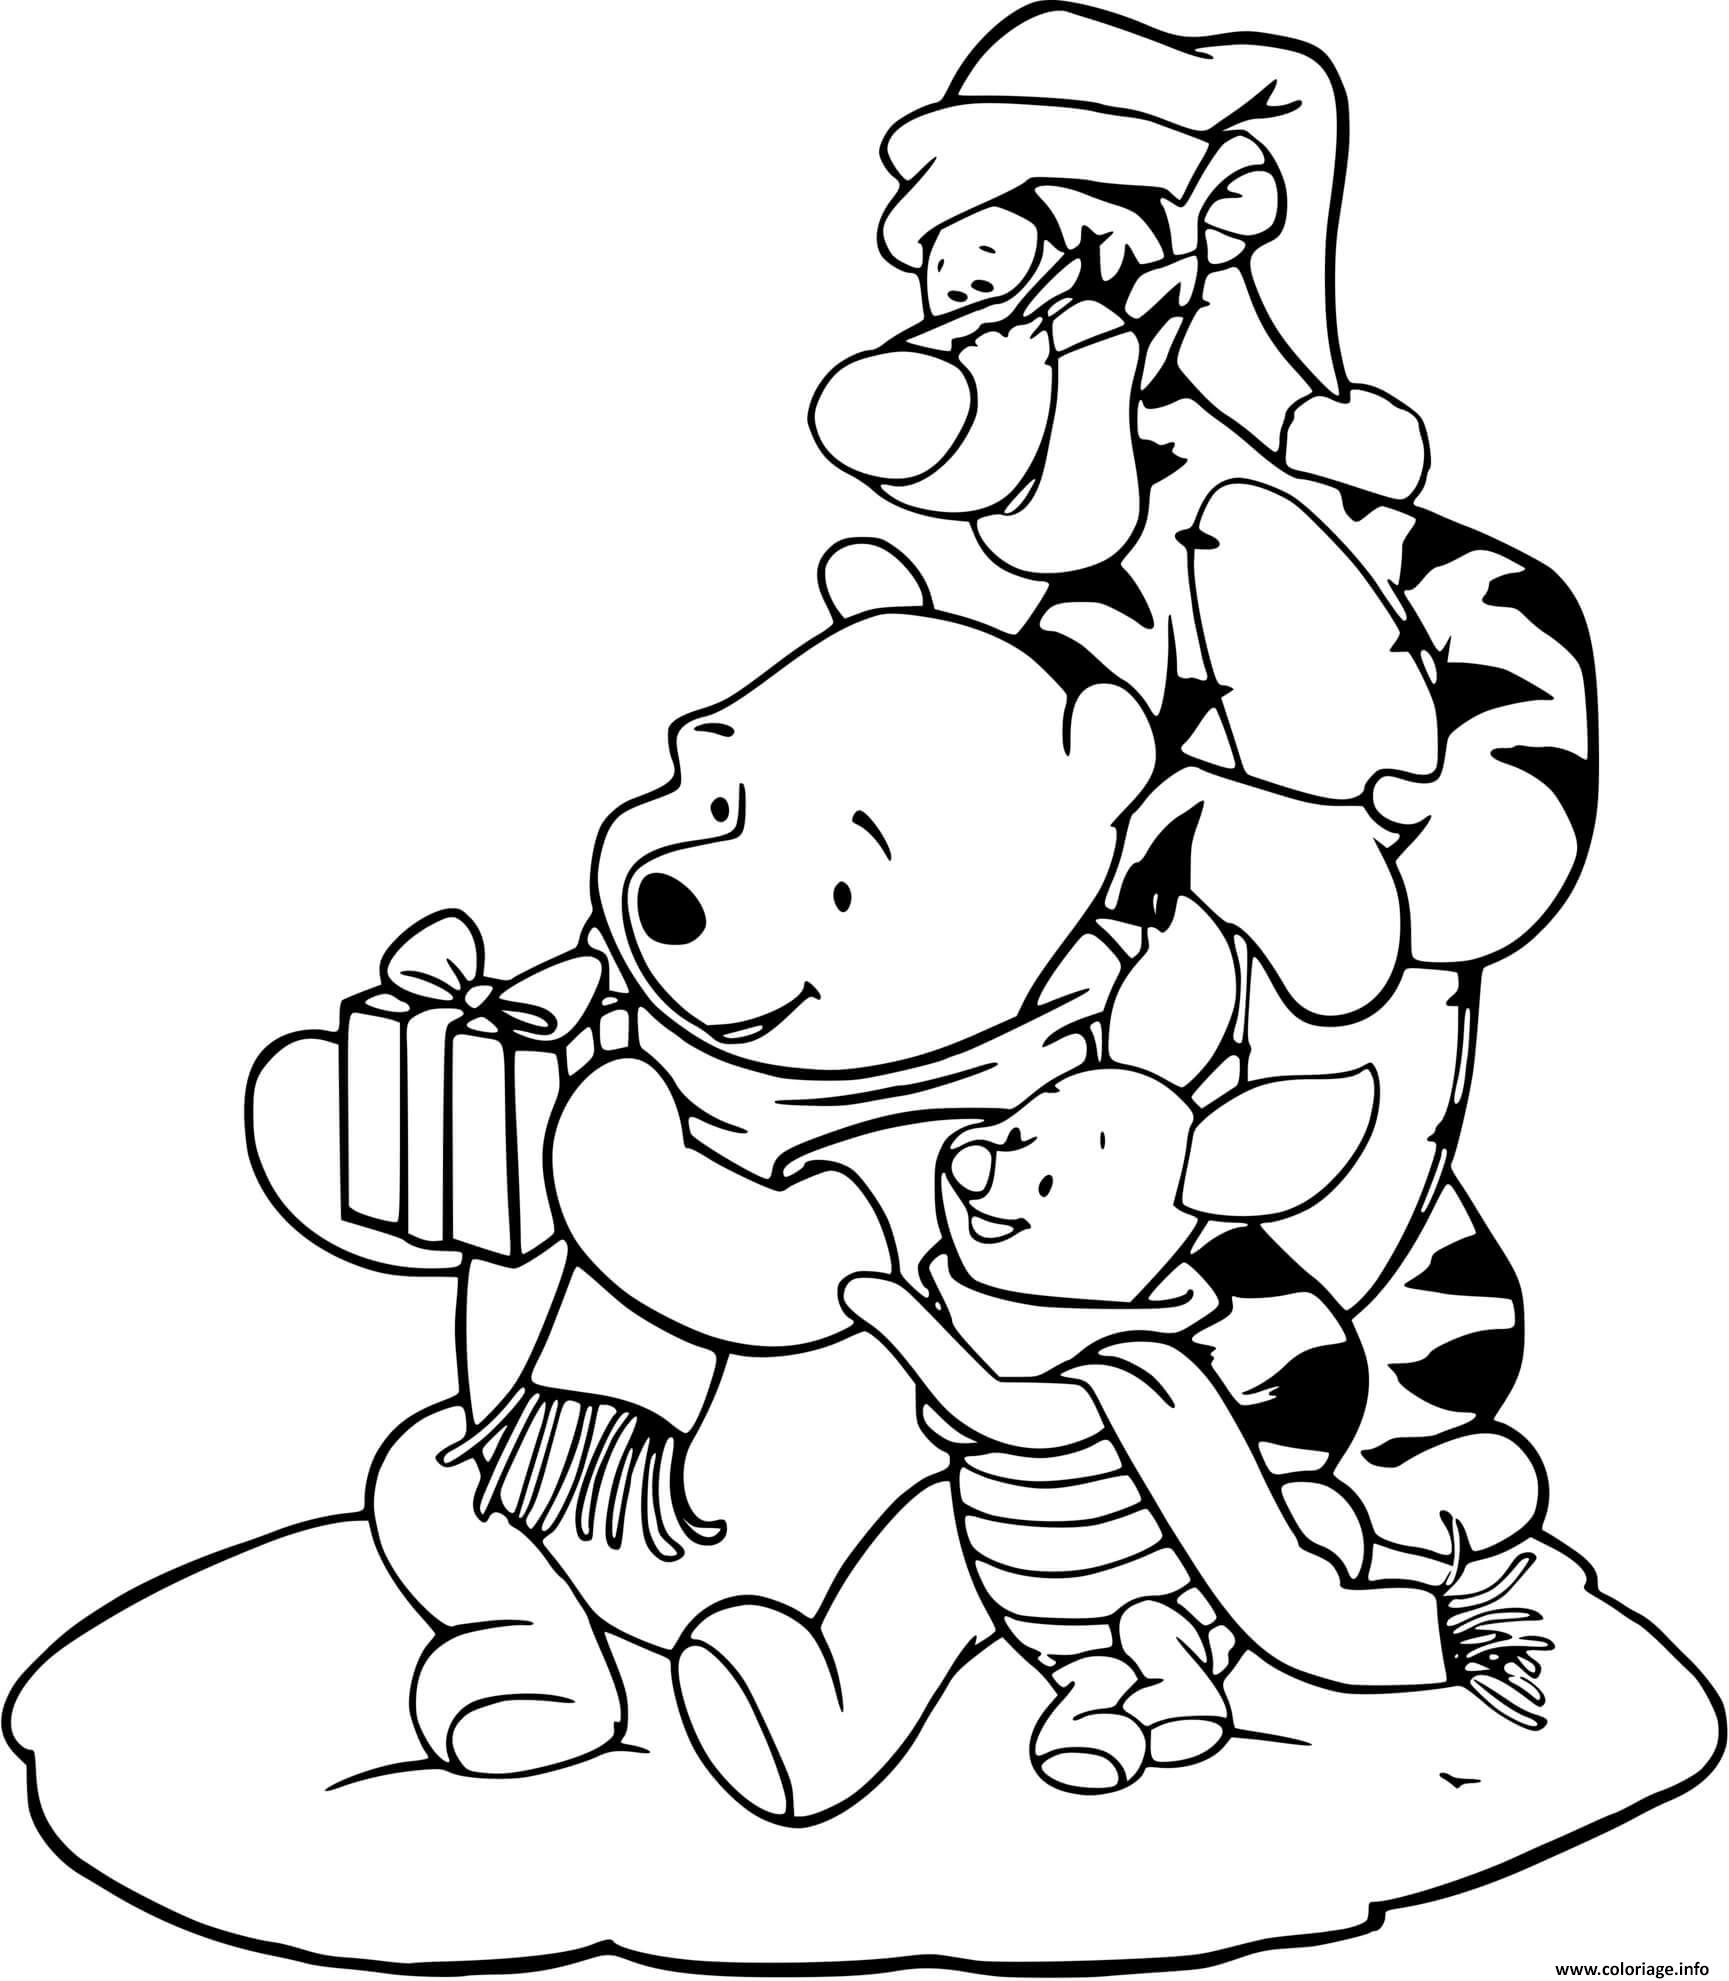 Dessin Pooh Tigger and Piglet Coloriage Gratuit à Imprimer